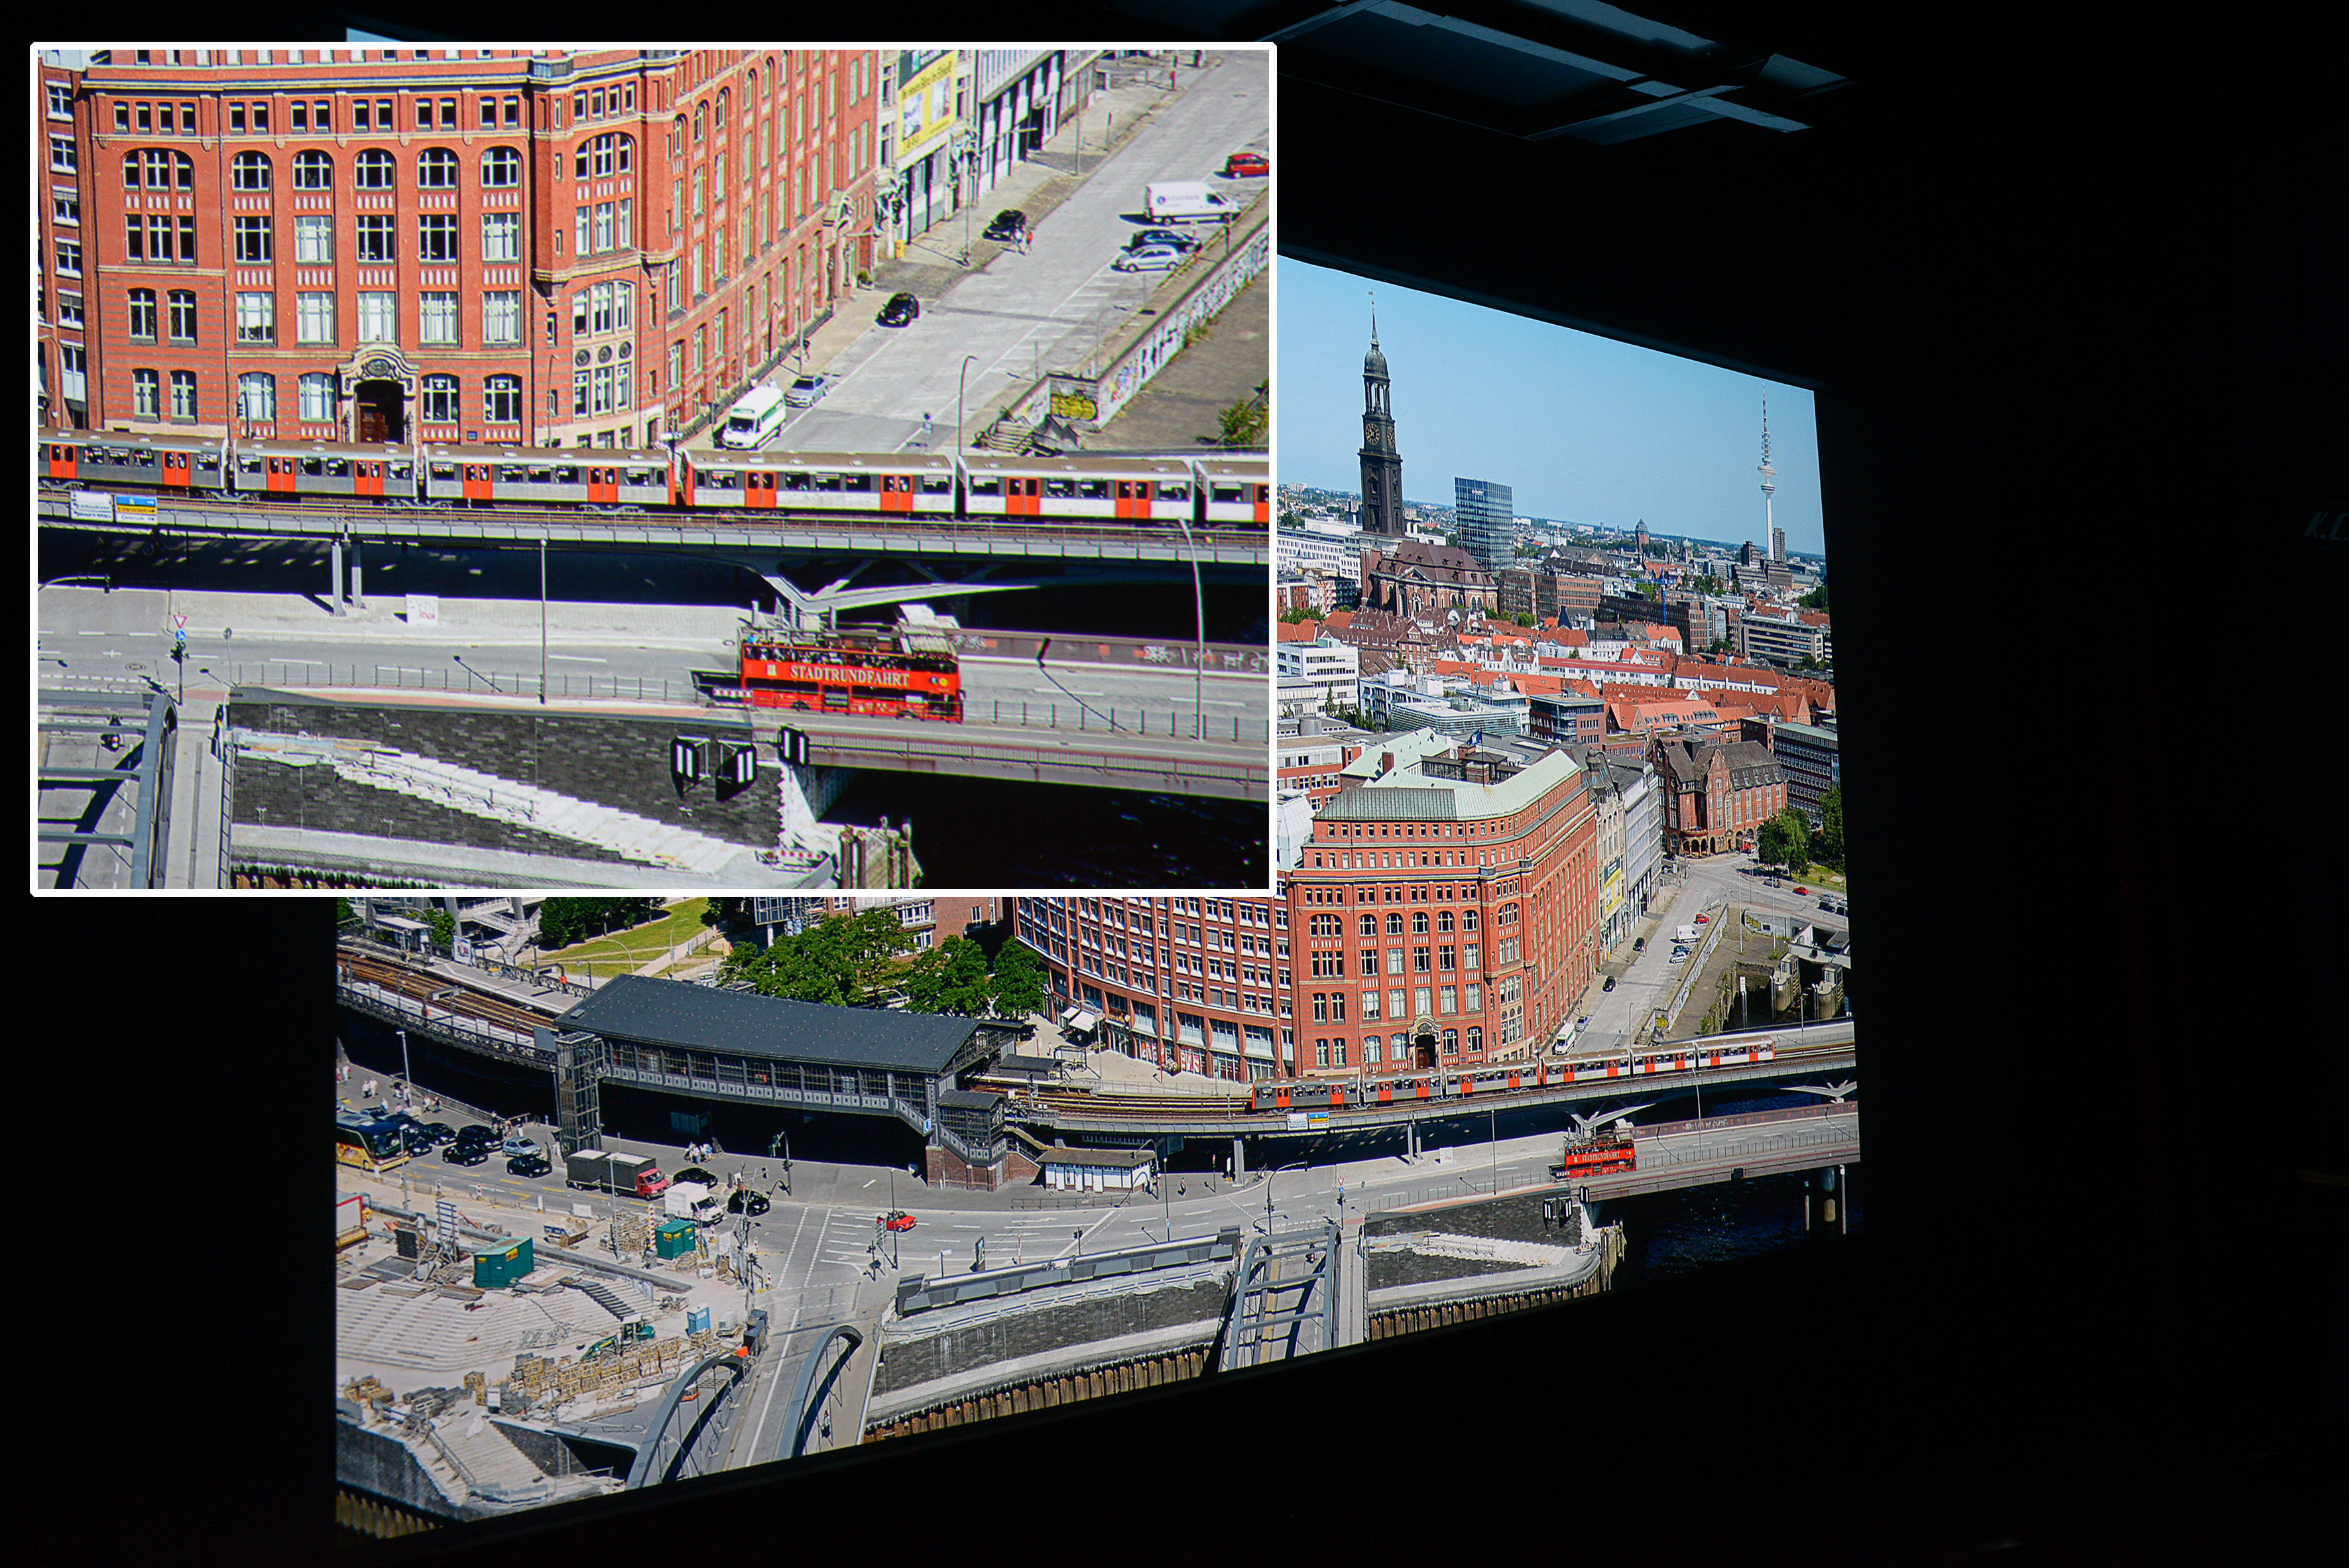 Michael B. Rehders Aus der 21. Etage des Hanseatic Trade Centers habe ich diese Panorama-Aufnahme geschossen. Auf der Ausschnittsvergrößerung (kleines Foto) ist gut zu sehen, dass der Schriftzug „STADTRUNDFAHRT“ vollständig abgebildet ist. Sogar einzelne Personen sind im Bus erkennbar. Das Wasser unter der Brücke ist dunkelblau. Wer genau hinschaut, erkennt sogar zwei Fahrradfahrer unter den Wegweisern an der U-Bahn-Brücke. Ein Fliegengitter ist nicht zu sehen, so dass dieses Foto fast wie ein Dia erscheint.